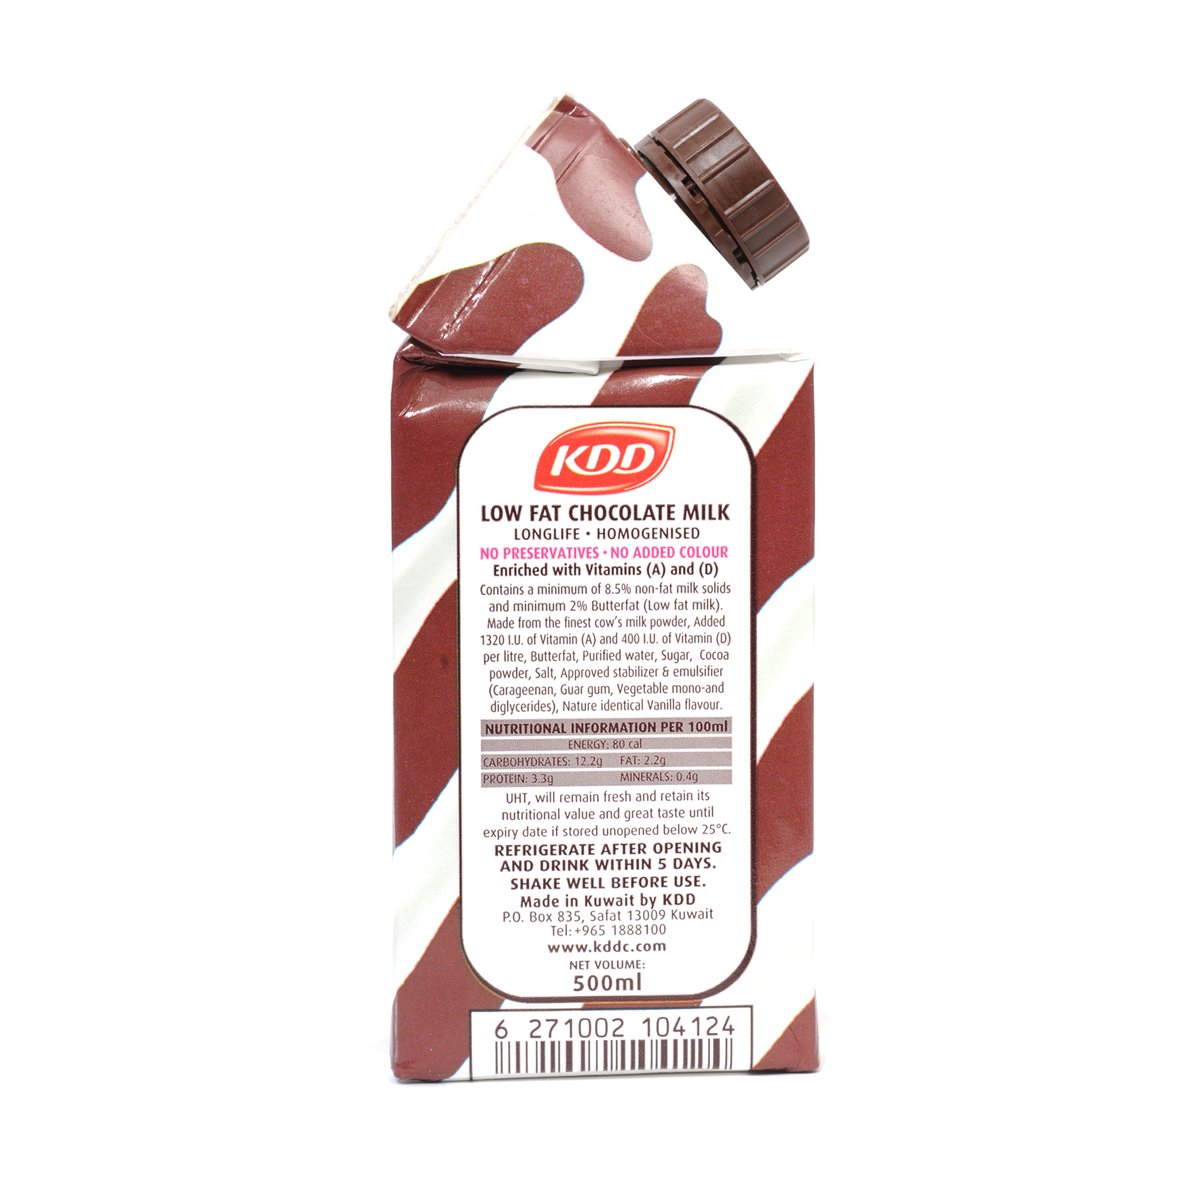 KDD Low Fat Chocolate Milk 4 x 500ml